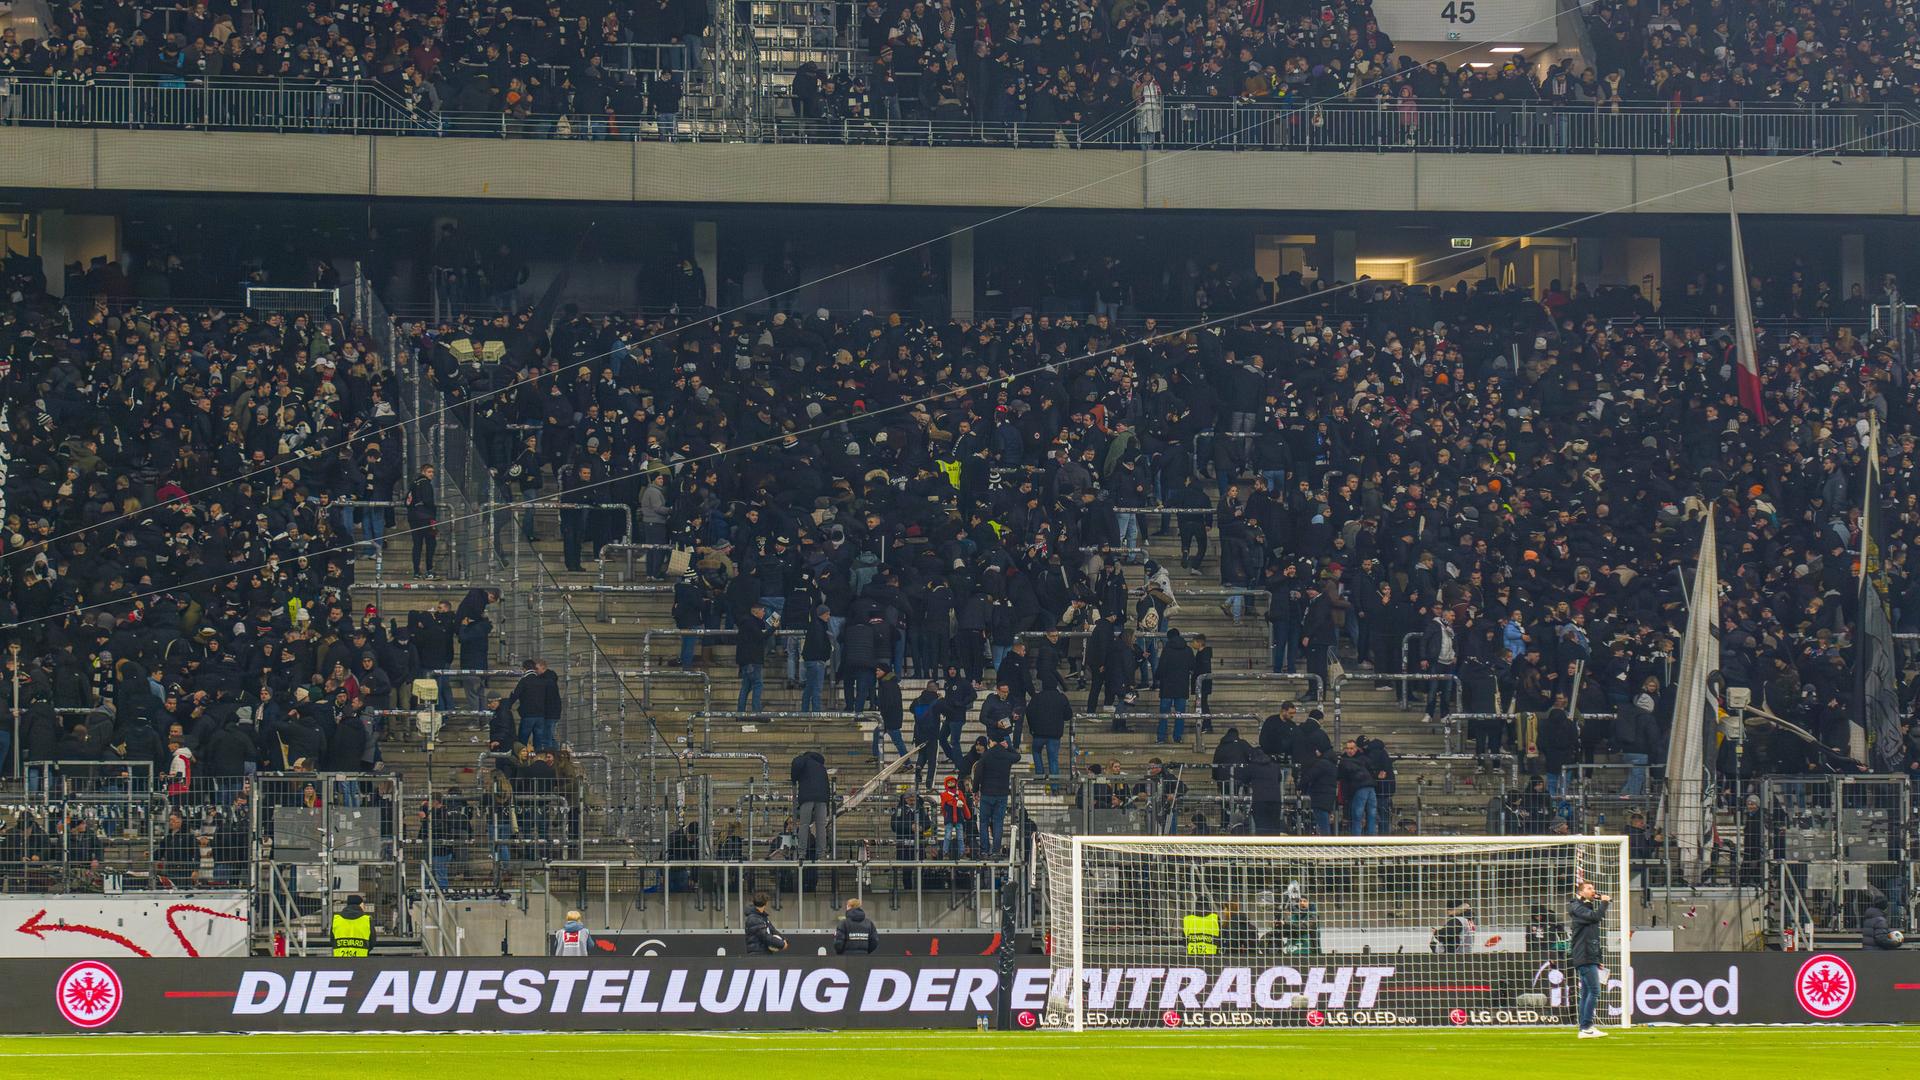 Nach den Fan-Ausschreitungen der Frankfurt Ultras, verlassen die Ultras von Eintracht Frankfurt das Stadion 